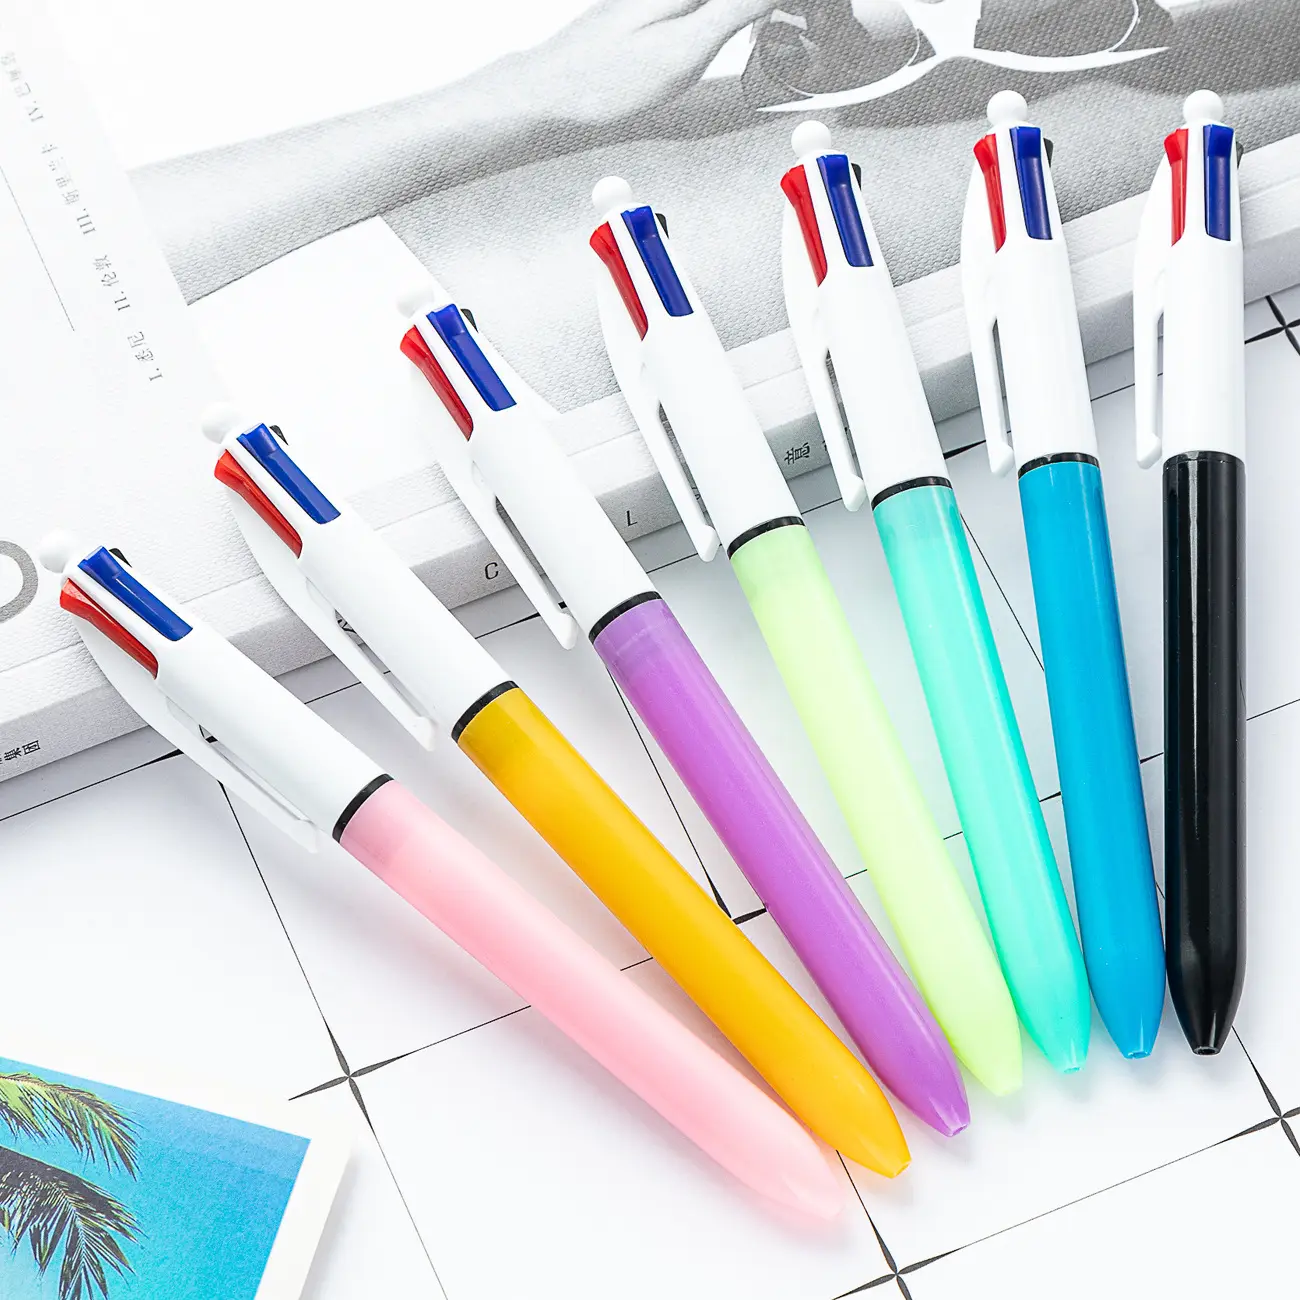 Çok renkli 4 renkli mürekkep kalem yenilik plastik malzeme 4 in 1 yedekler promosyon çok renkli tükenmez kalem ile dört renkli mürekkep